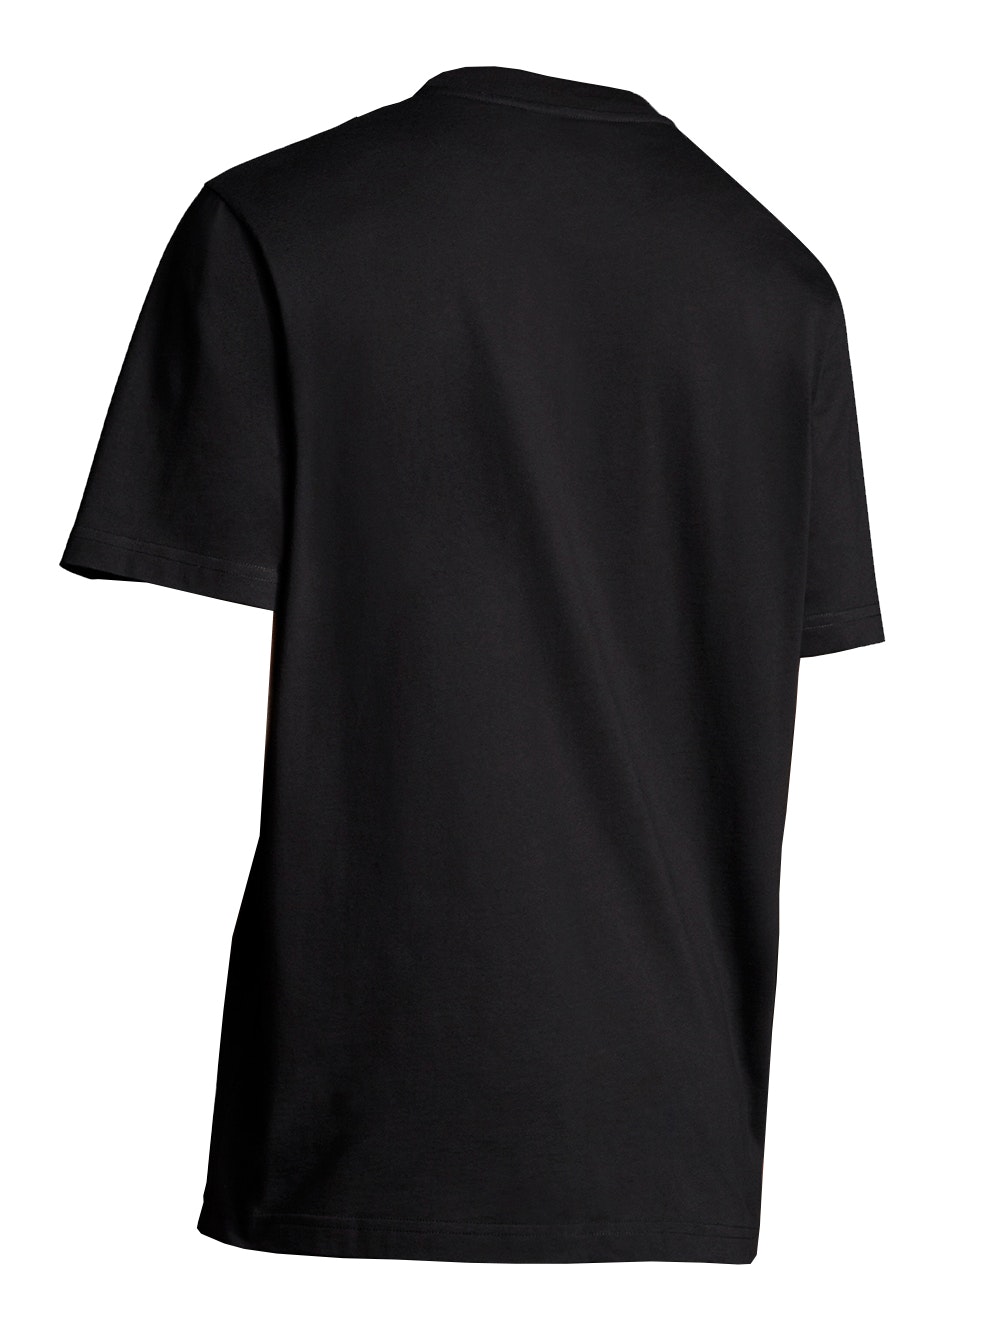 SASOM | เสื้อผ้า Moncler 5 Craig Green Logo Graphic Printed T-Shirt ...